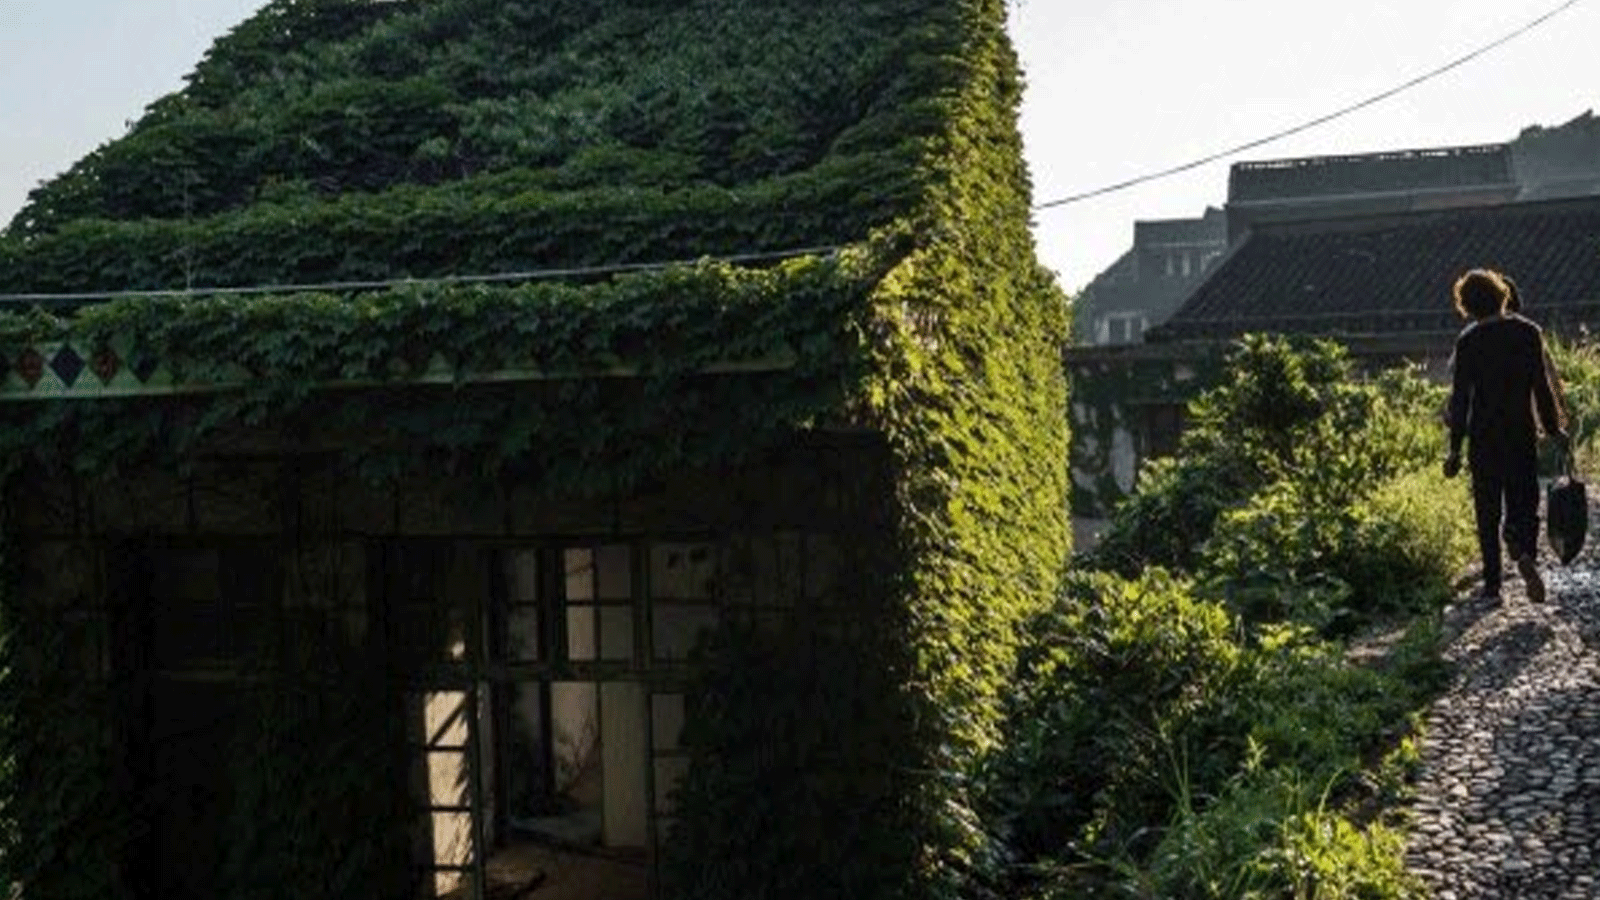 الأعشاب تغطي المباني غير المكتملة في الصين